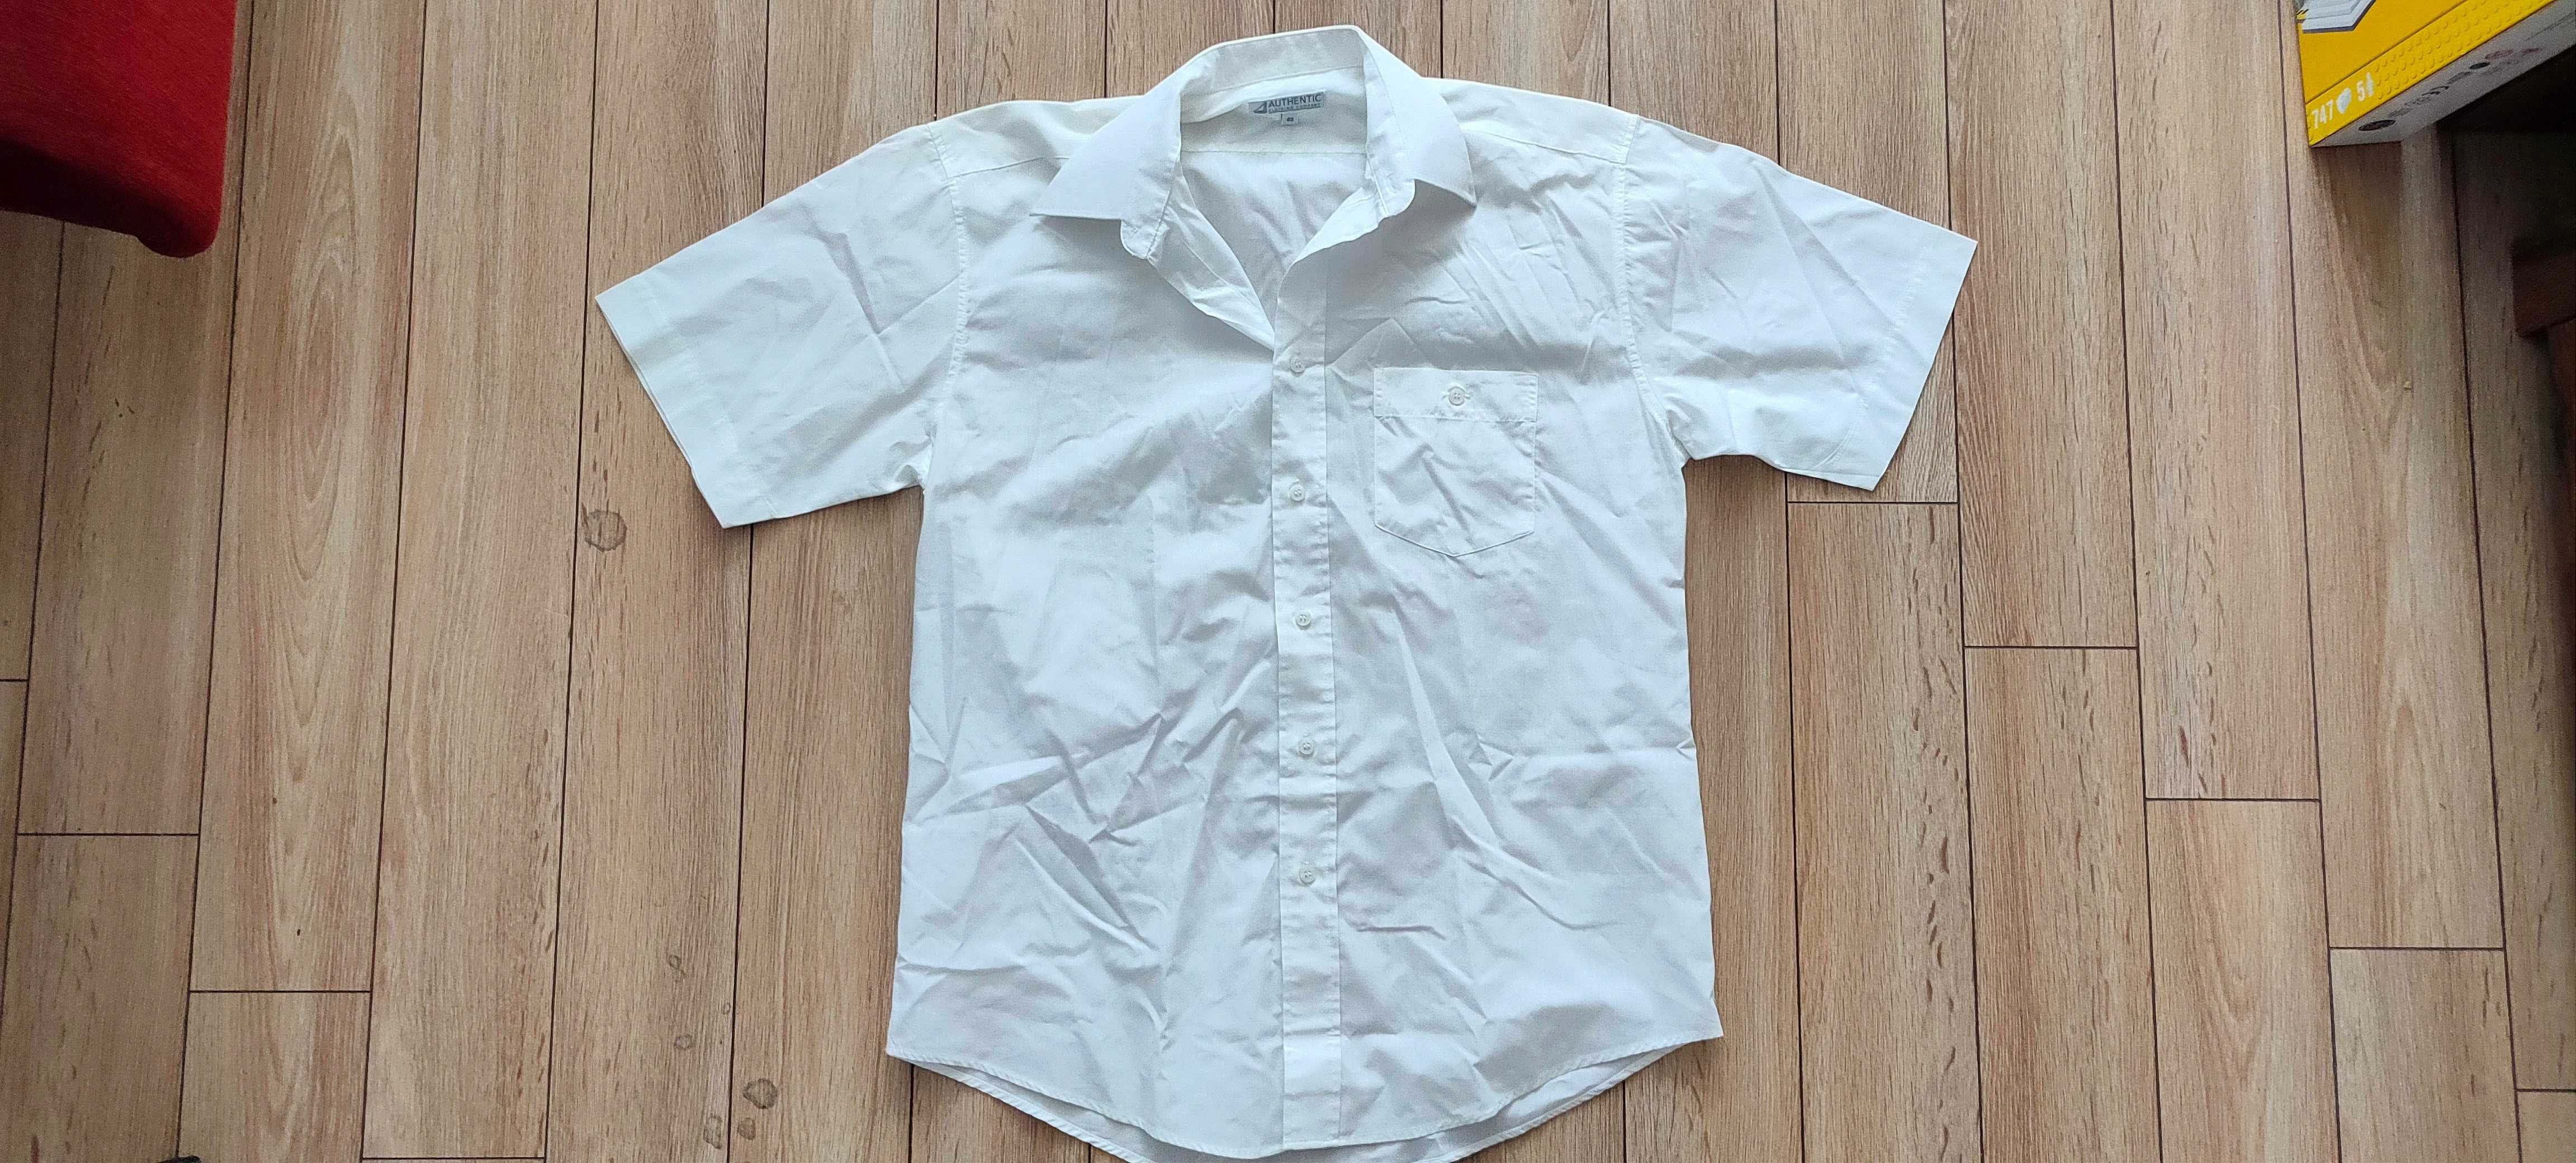 Koszula biała z krótkim rękawkiem, Authentic, r. 40